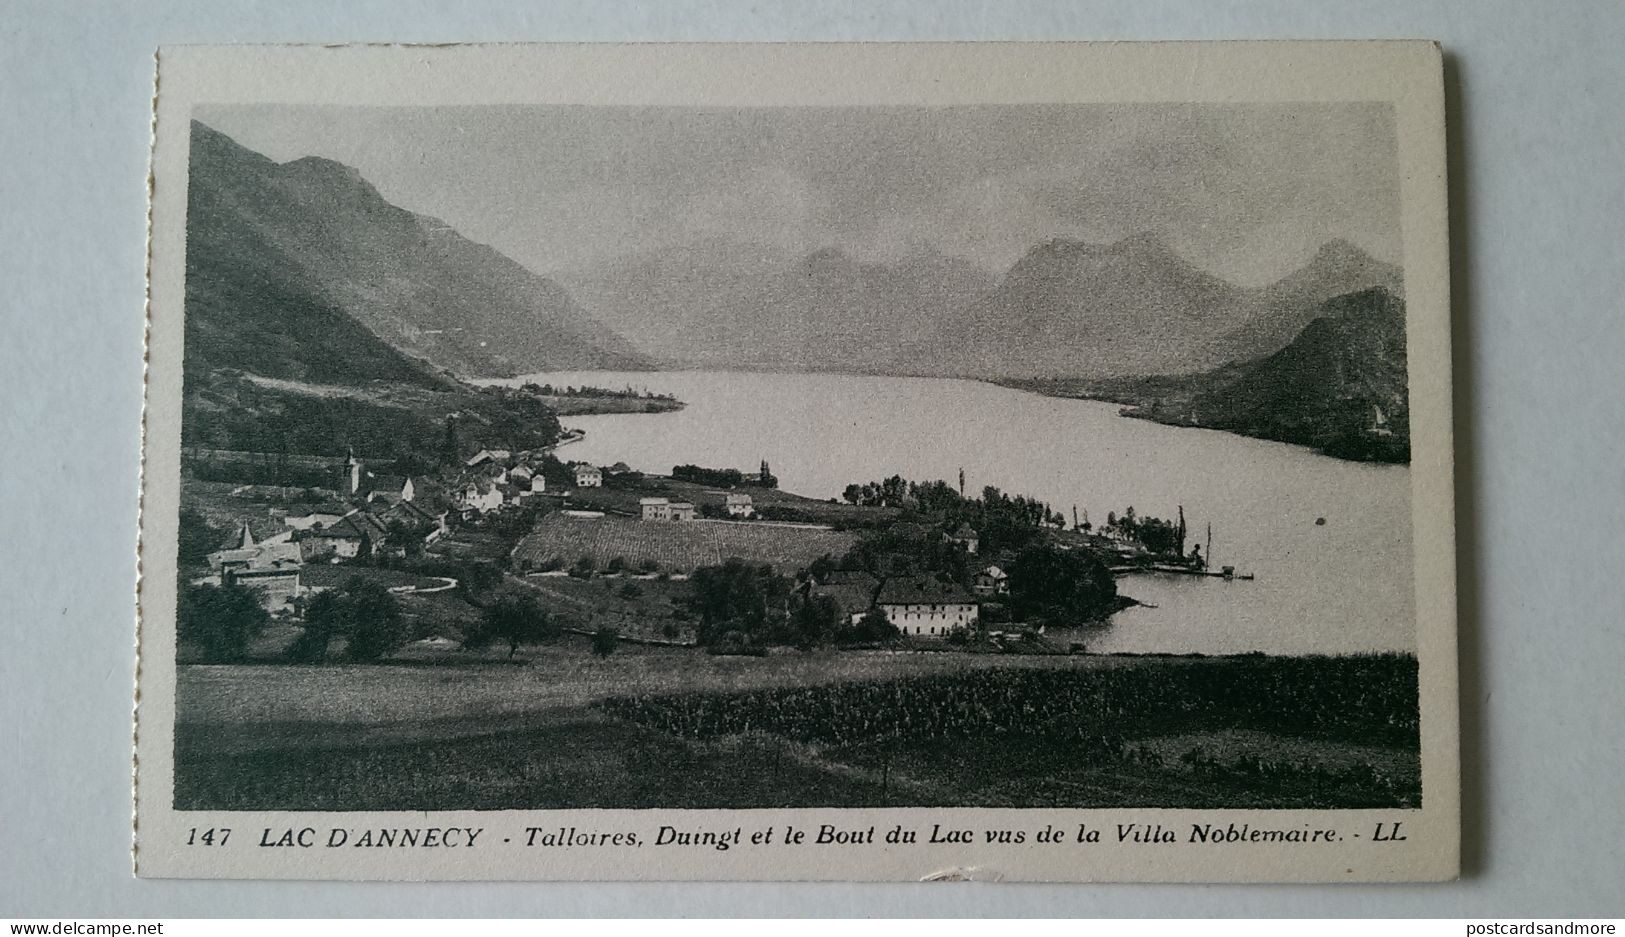 France Annecy Lot of 20 unused postcards Lévy et Neurdein Réunis ca. 1925